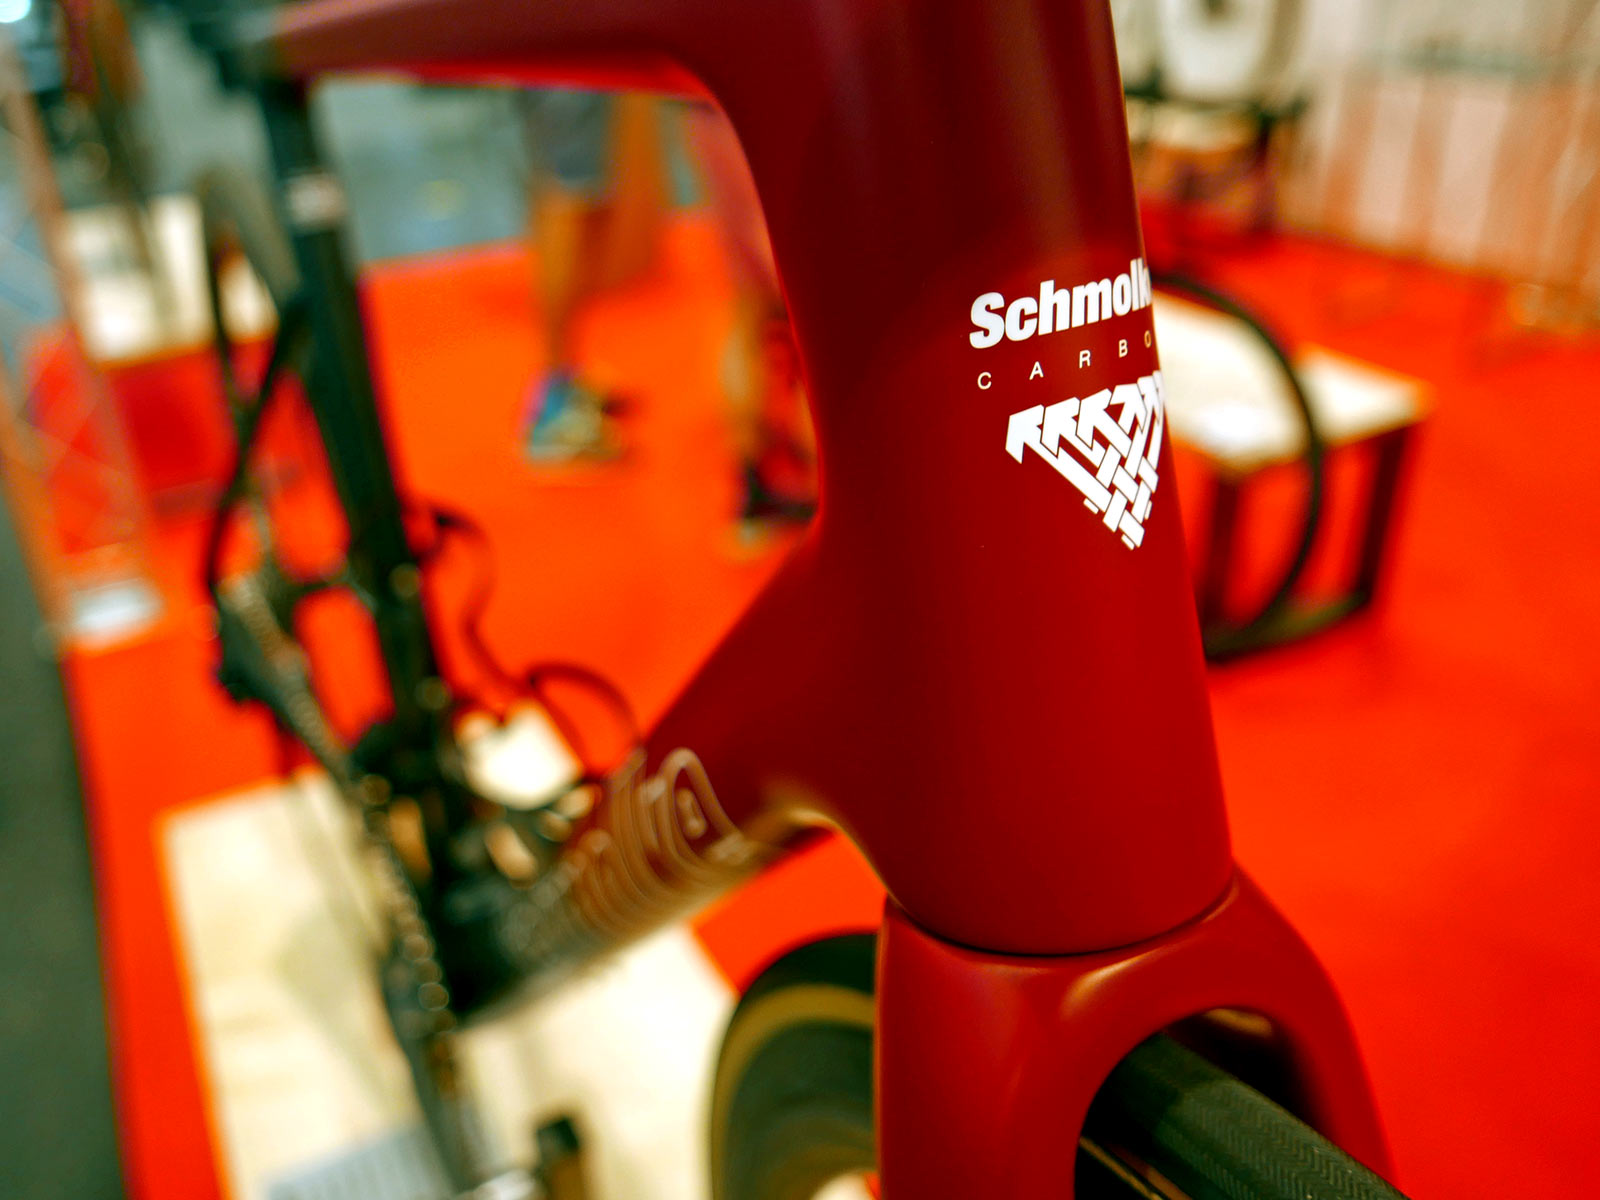 Schmolke x WiaWis complete ultralight carbon bikes